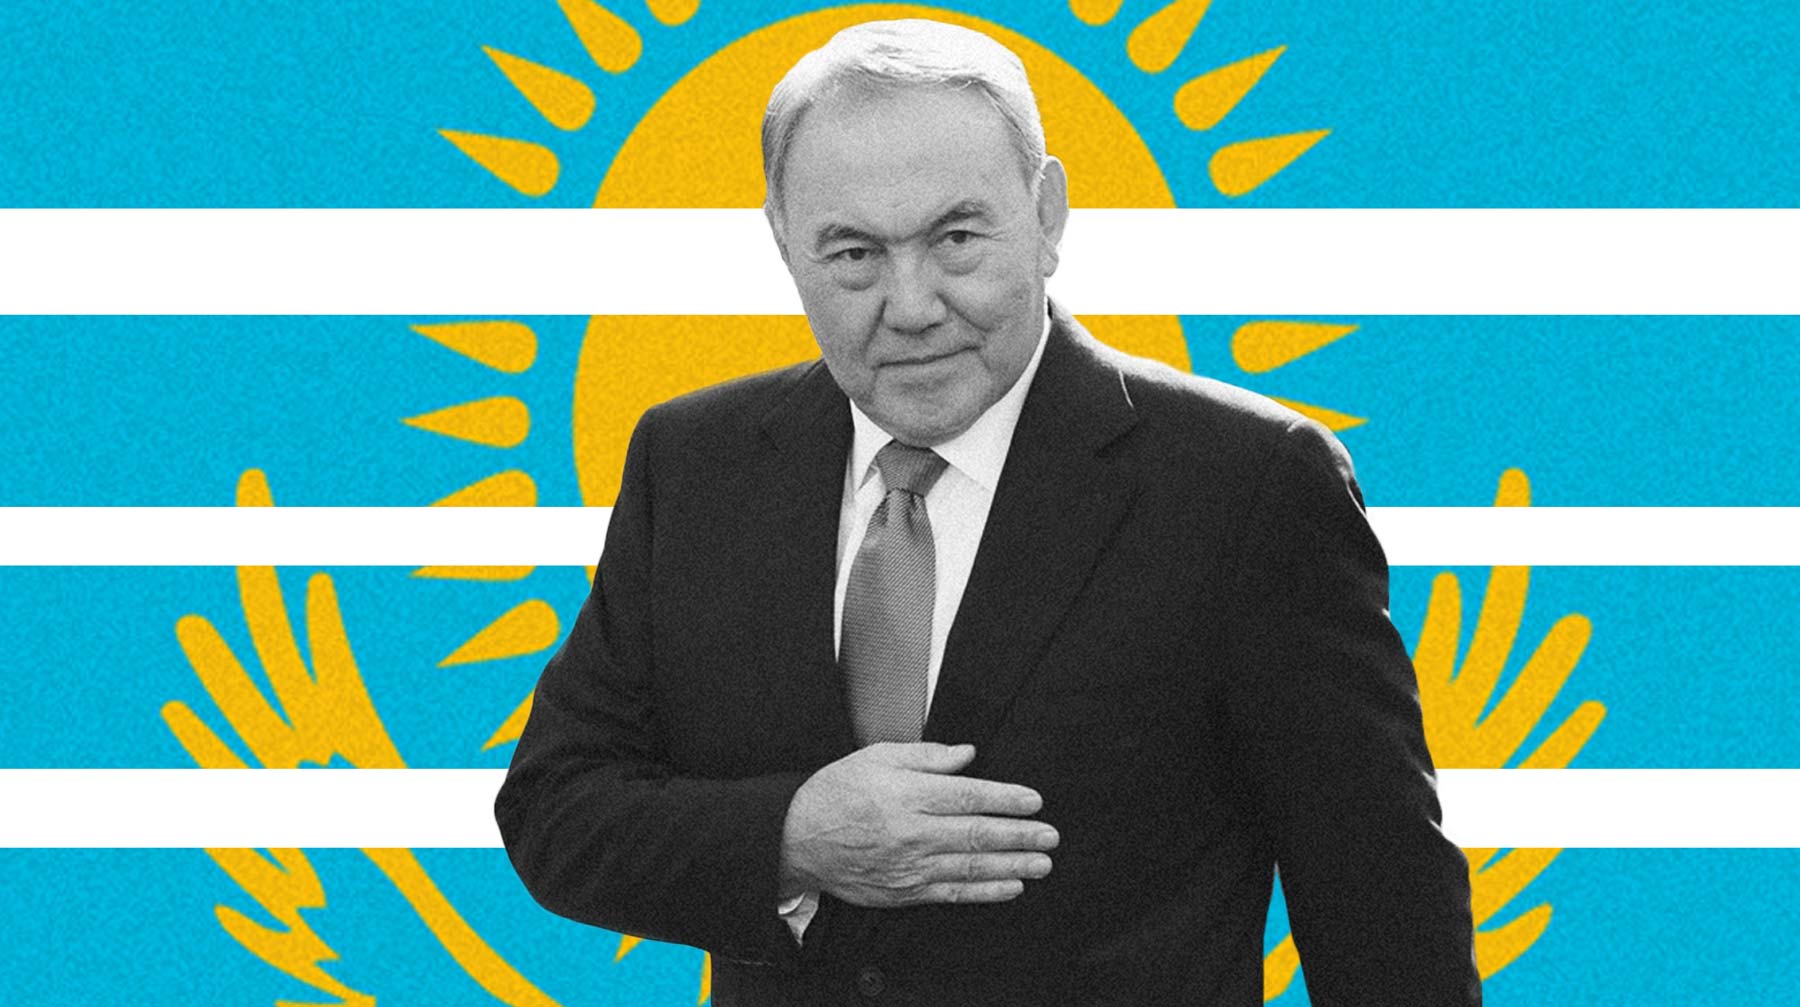 Глава государства сообщил об этом в специальном видеообращении к народу Нурсултан Назарбаев